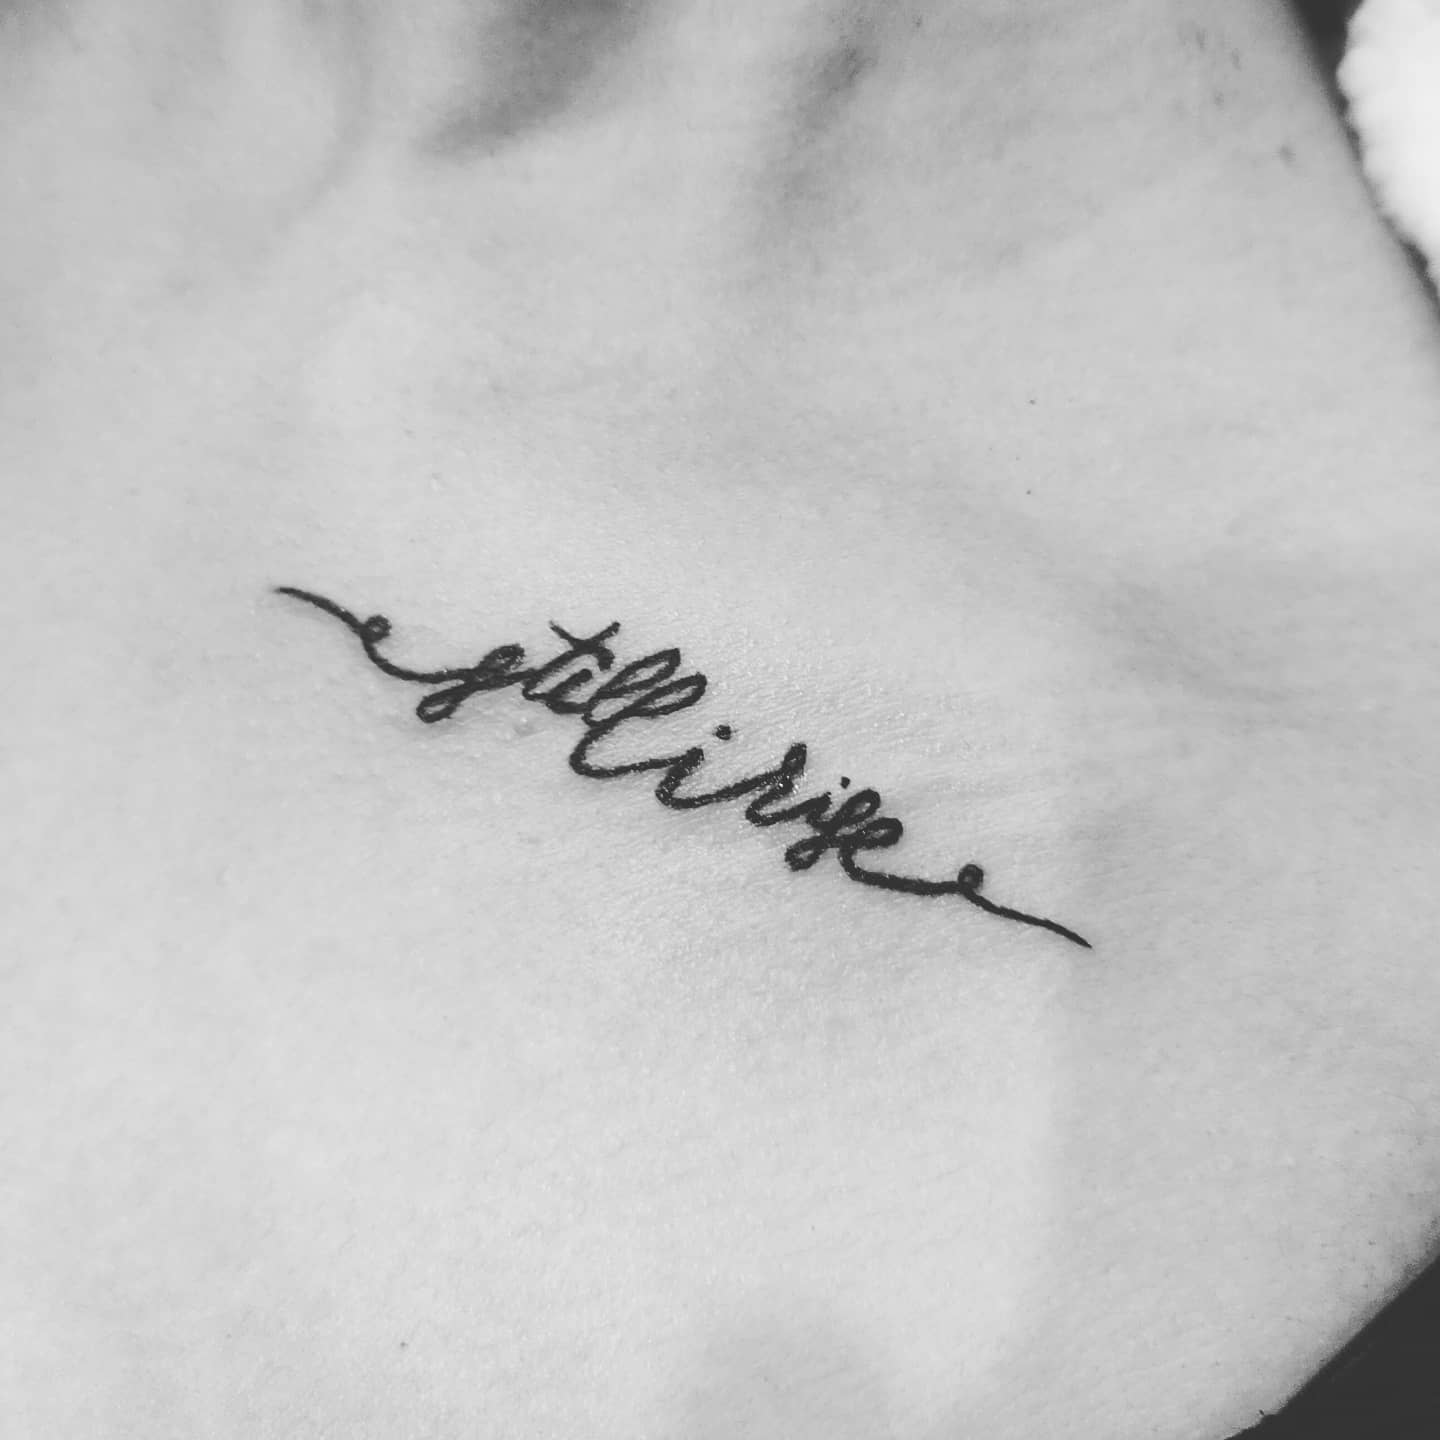 Small Still I Rise Tattoo -its_a_trap0_0